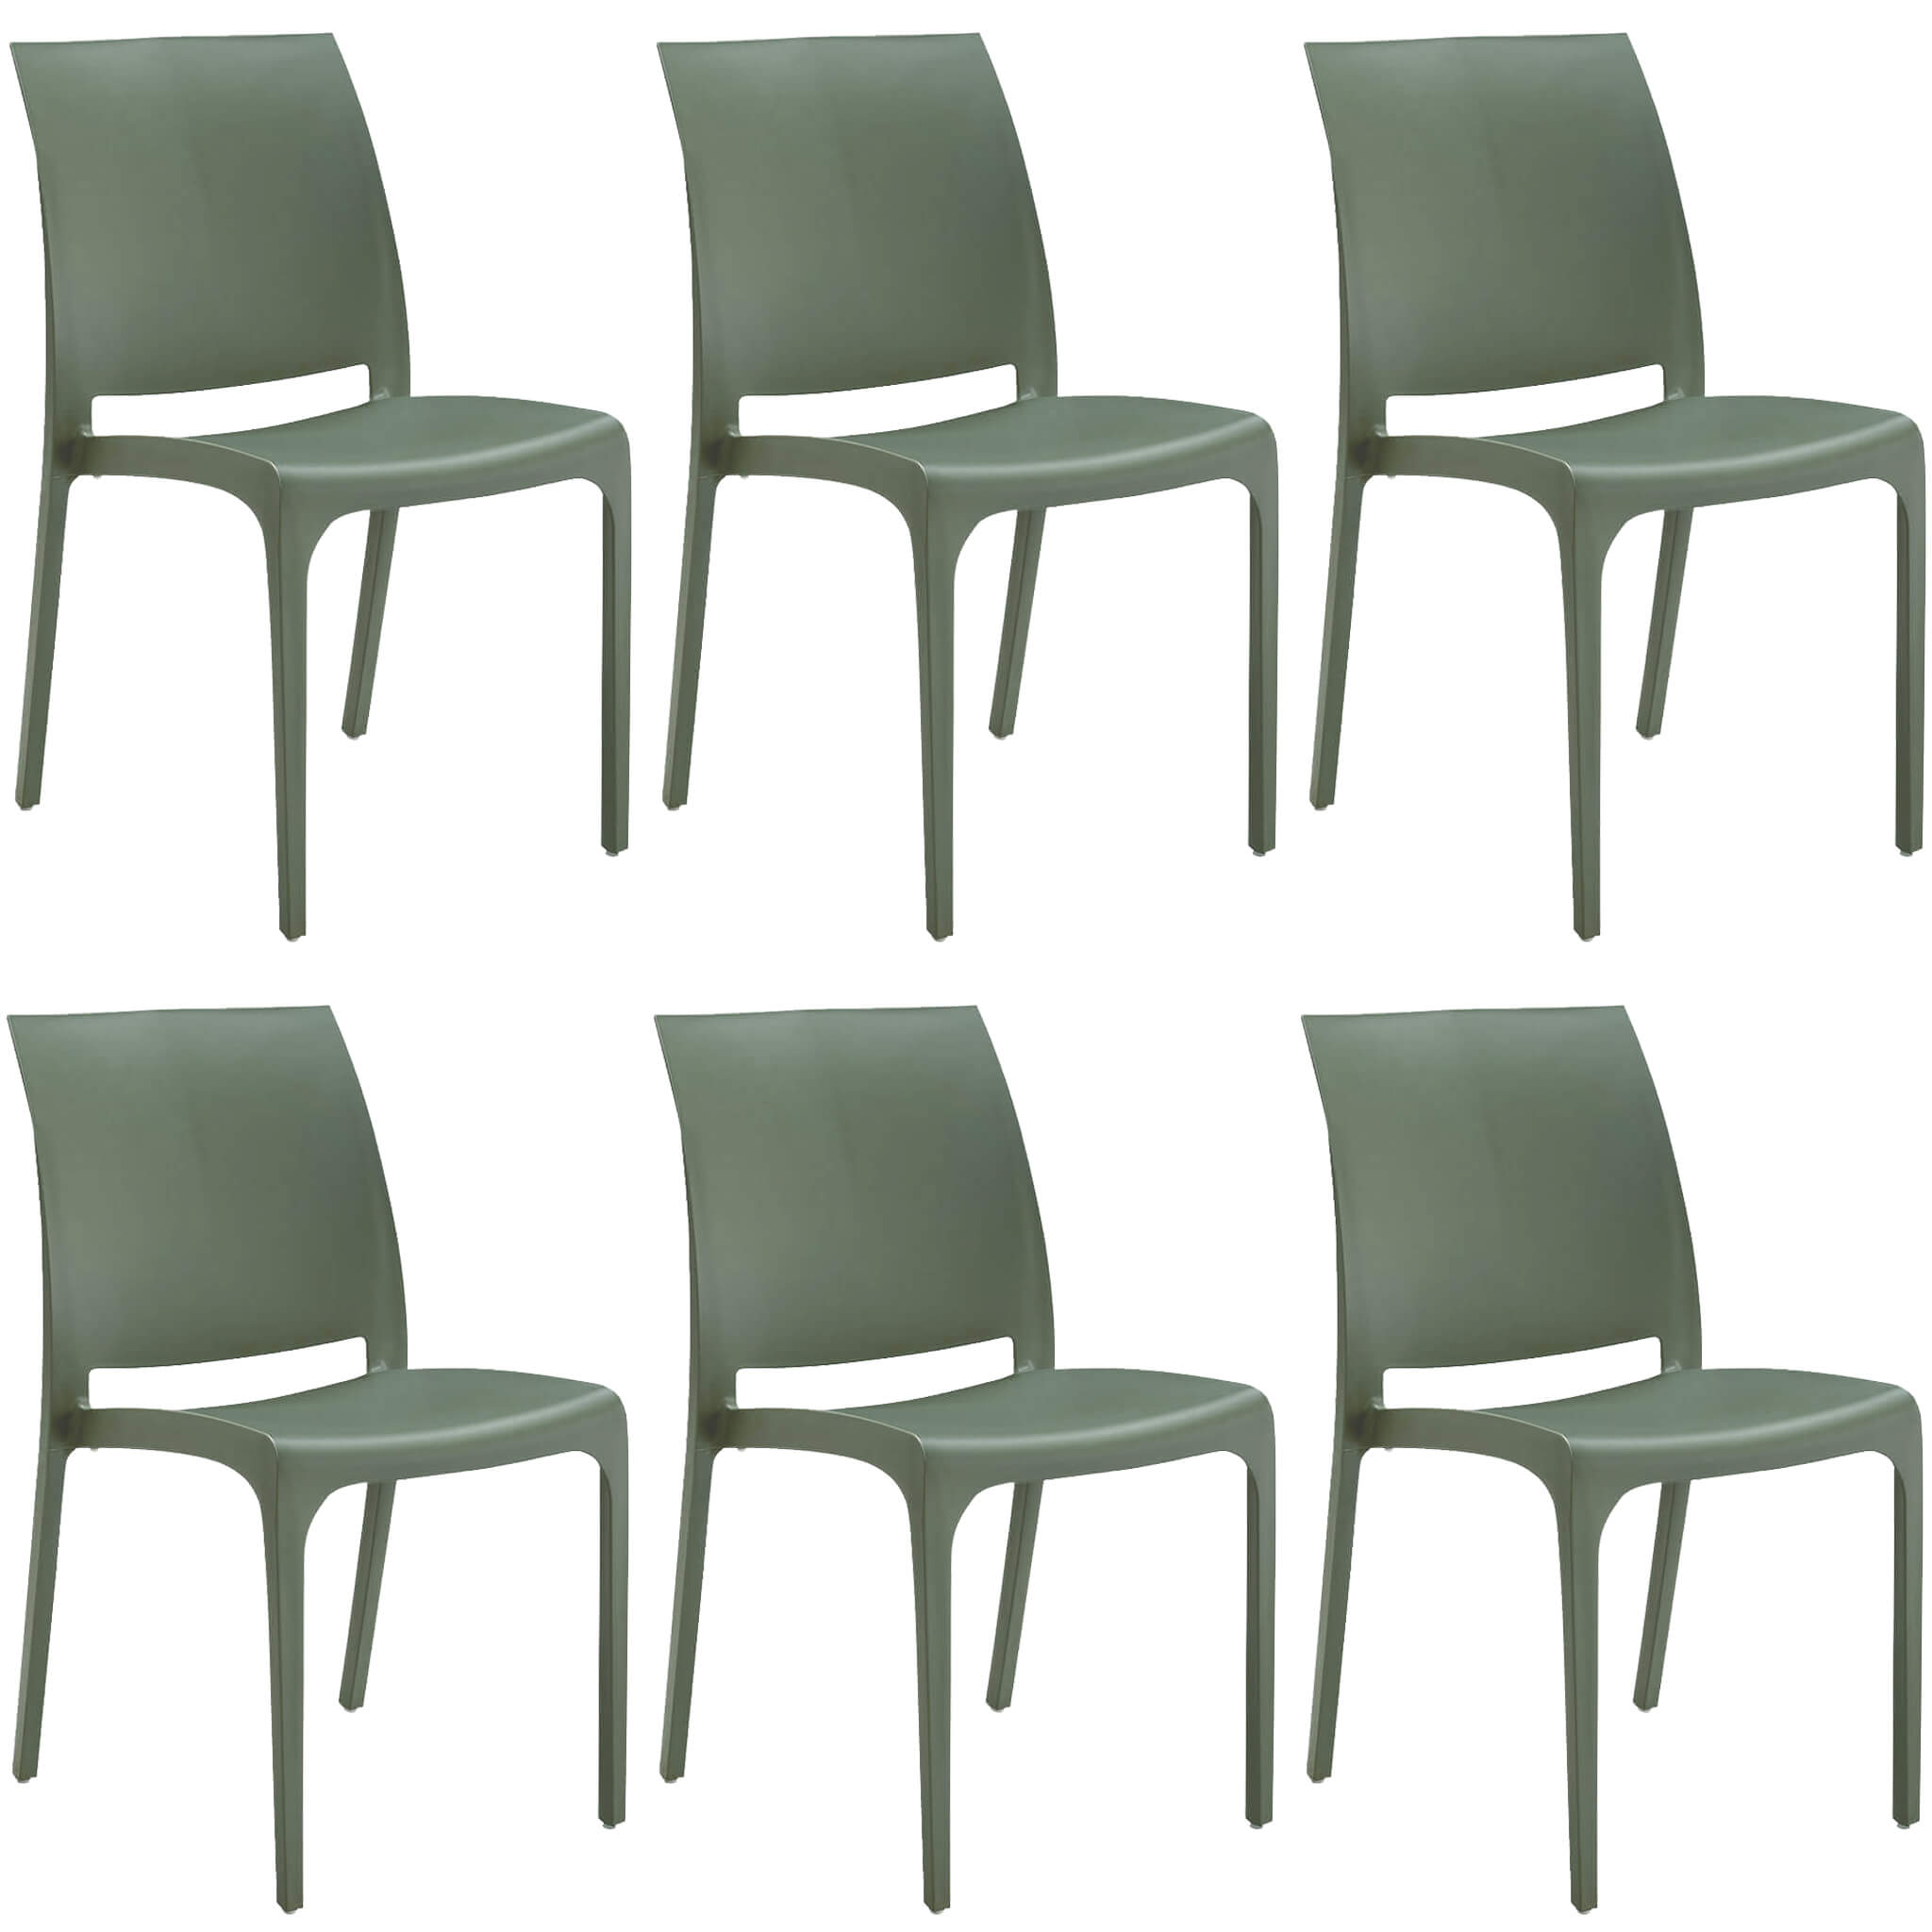 Milani Home set di 6 sedie poltrone da giardino in plastica design moderno colorata Verde Verde 46 x 80 x 54 cm